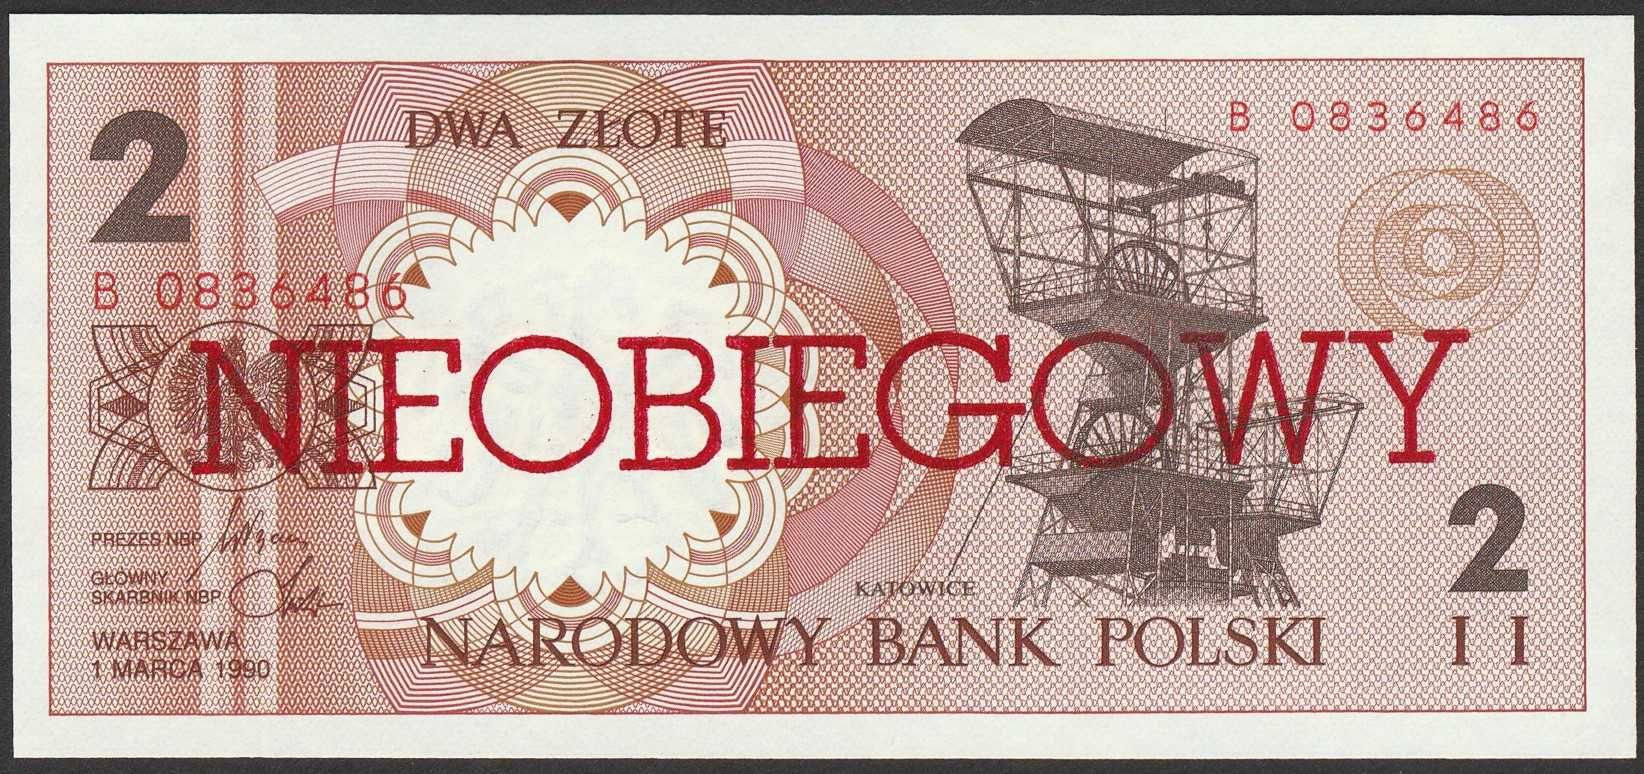 Polska 2 złote 1990 NIEOBIEGOWY - B - stan bankowy UNC